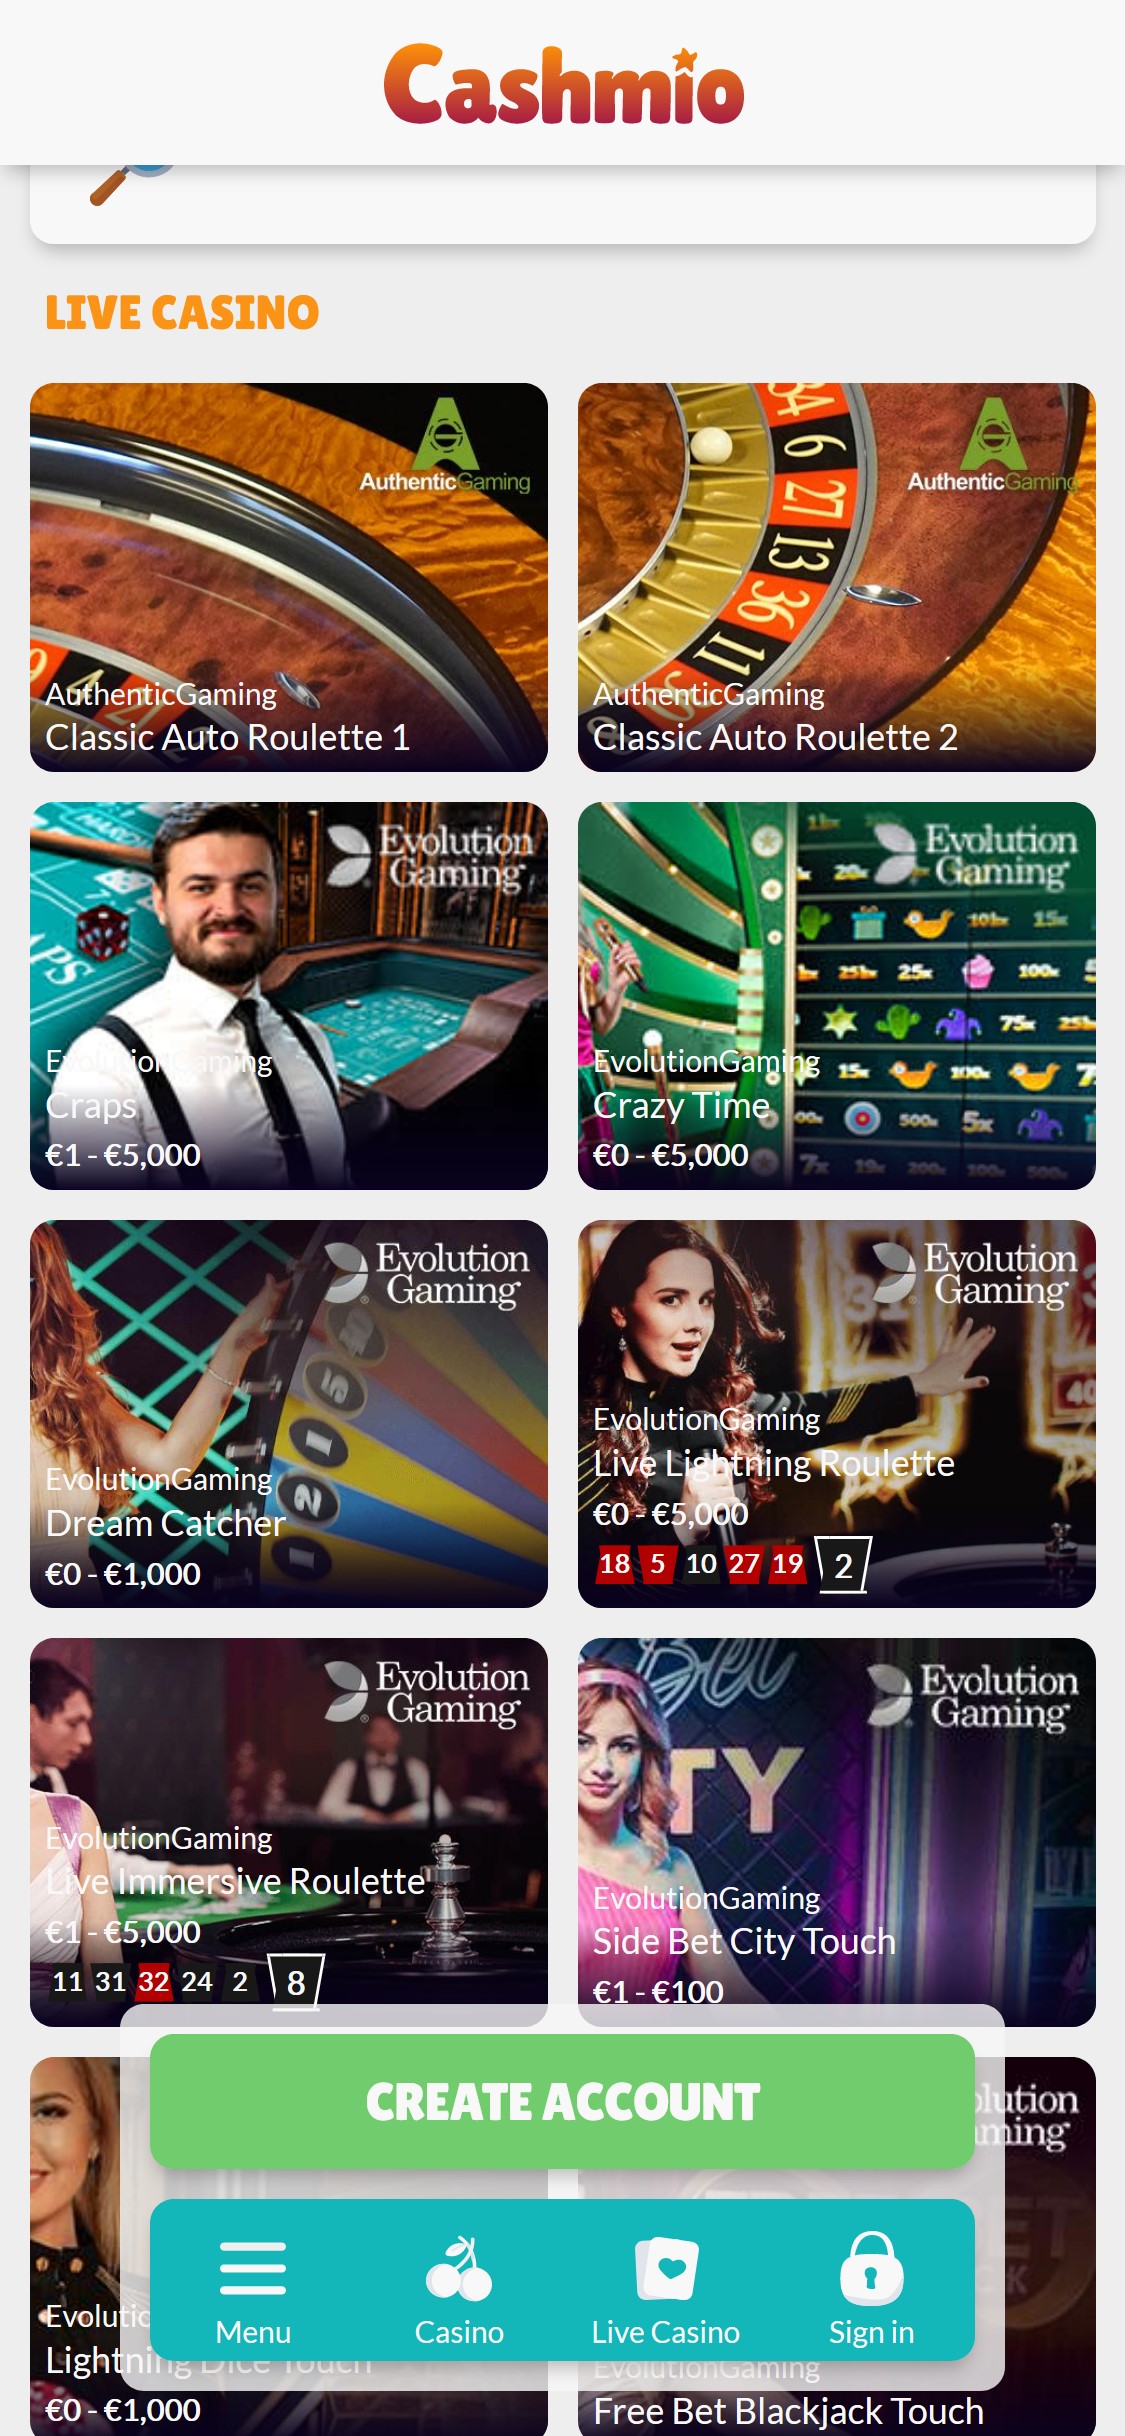 Cashmio Casino Mobile Live Dealer Games Review